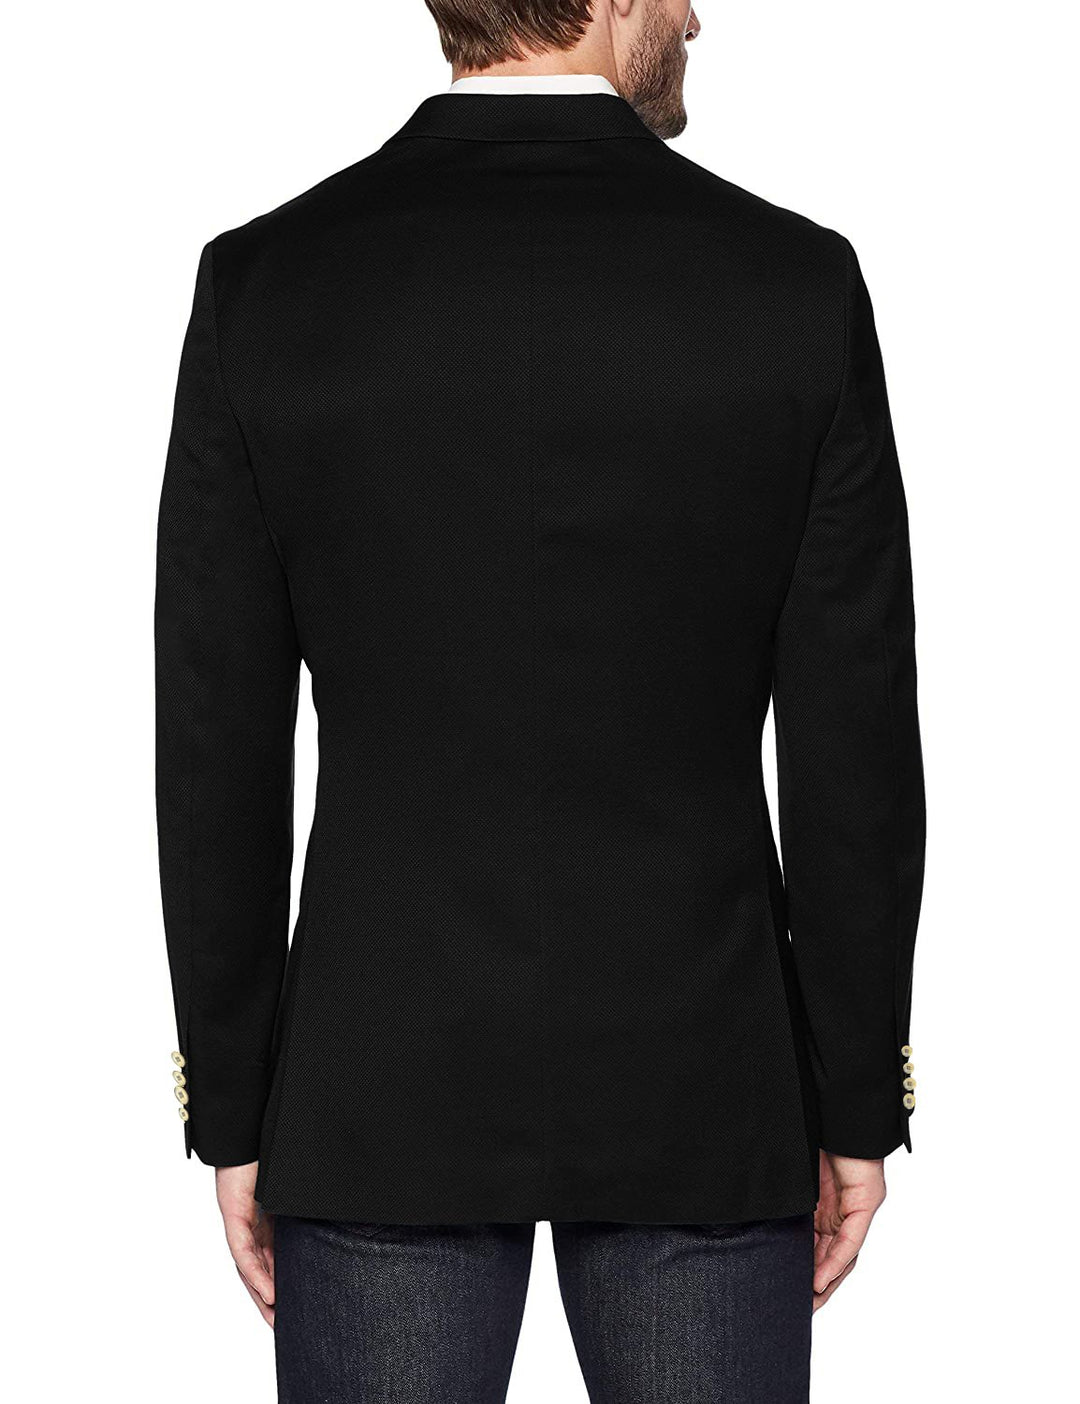 Adam Baker Men's Single Breasted Classic Fit Super 140'S 100% Wool Luxury Blazer/Sport Coat